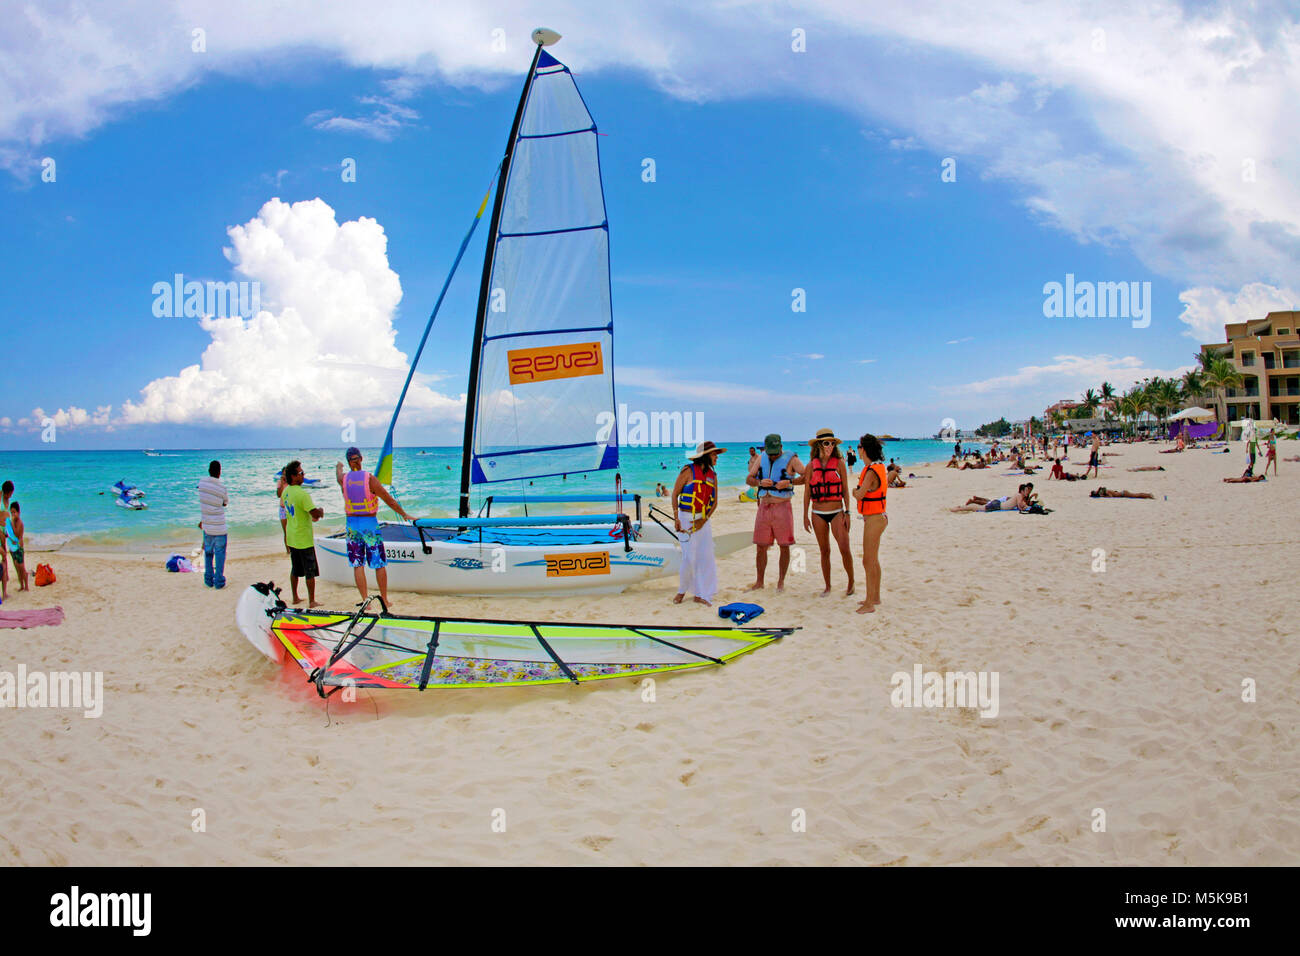 Wassersport am Strand von Playa del Carmen, Mexiko, Karibik | Wassersport am Strand von Playa del Carmen, Mexiko, Karibik Stockfoto